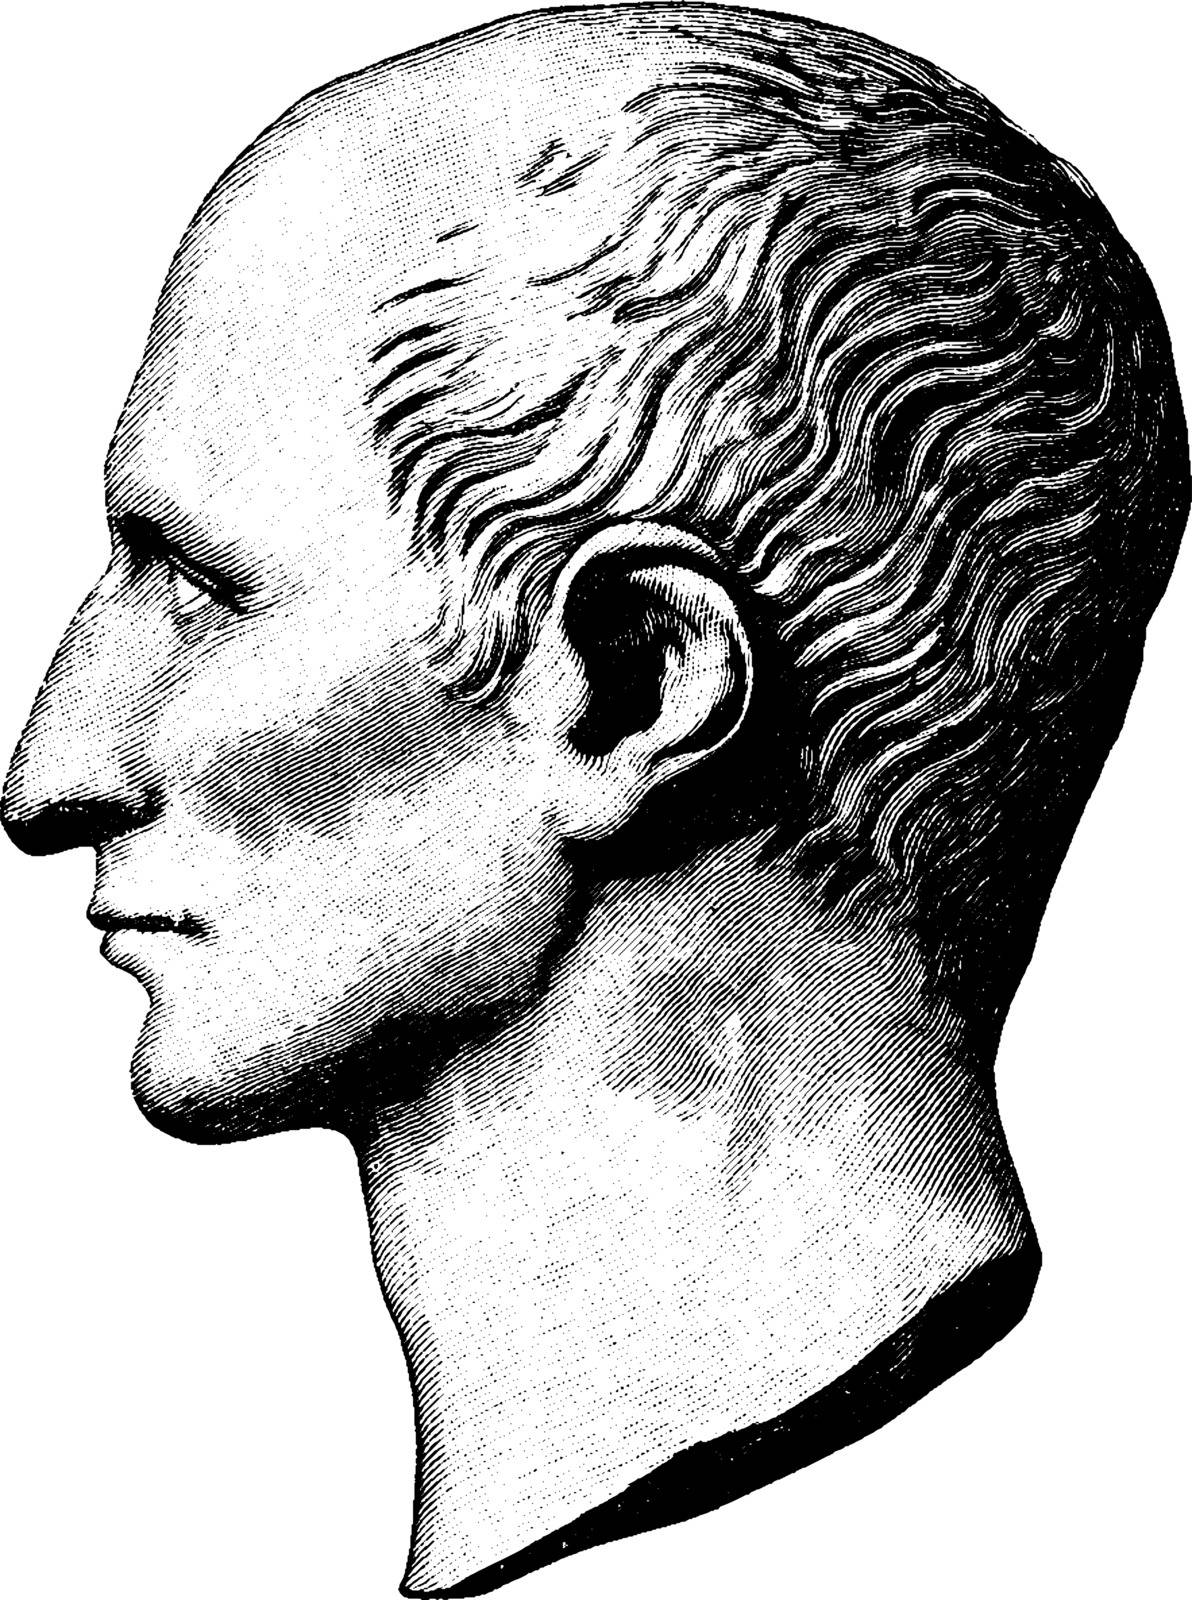 Gaius Iulius Caesar, vintage illustration by Morphart